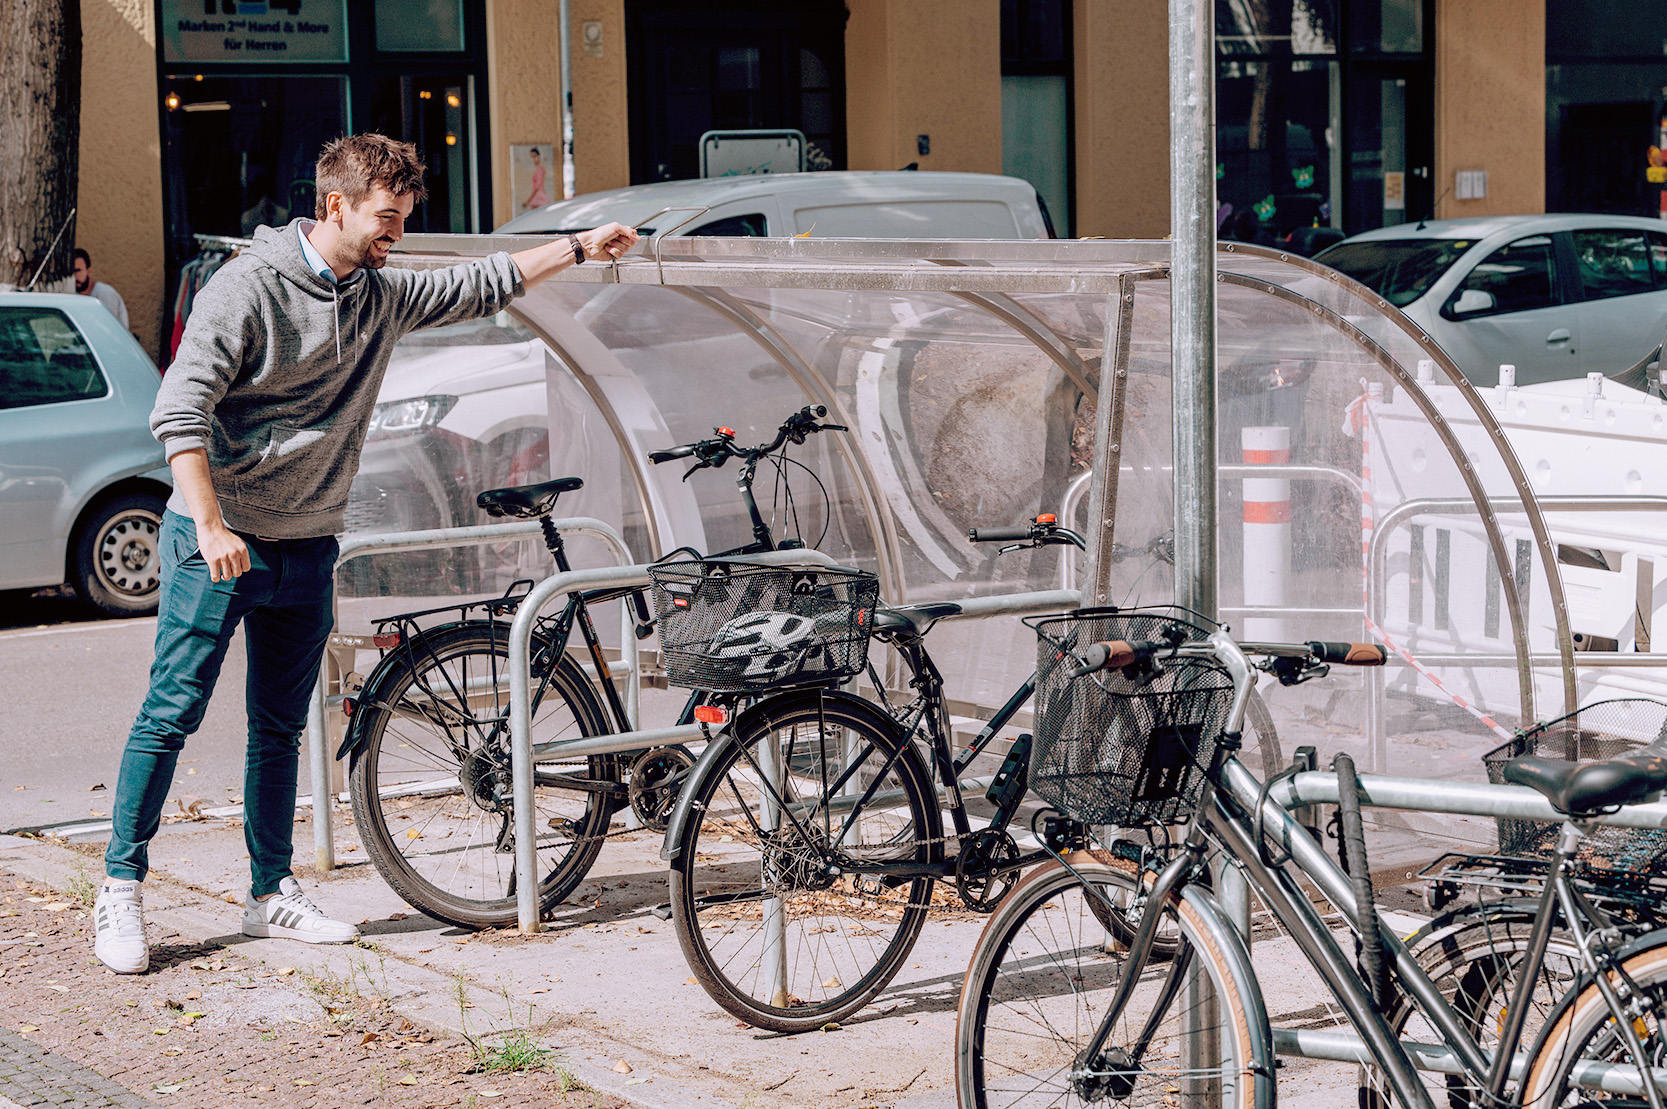 Eine Person steht links neben der Fahrradgarage und öffnet die Fahrradgarage.